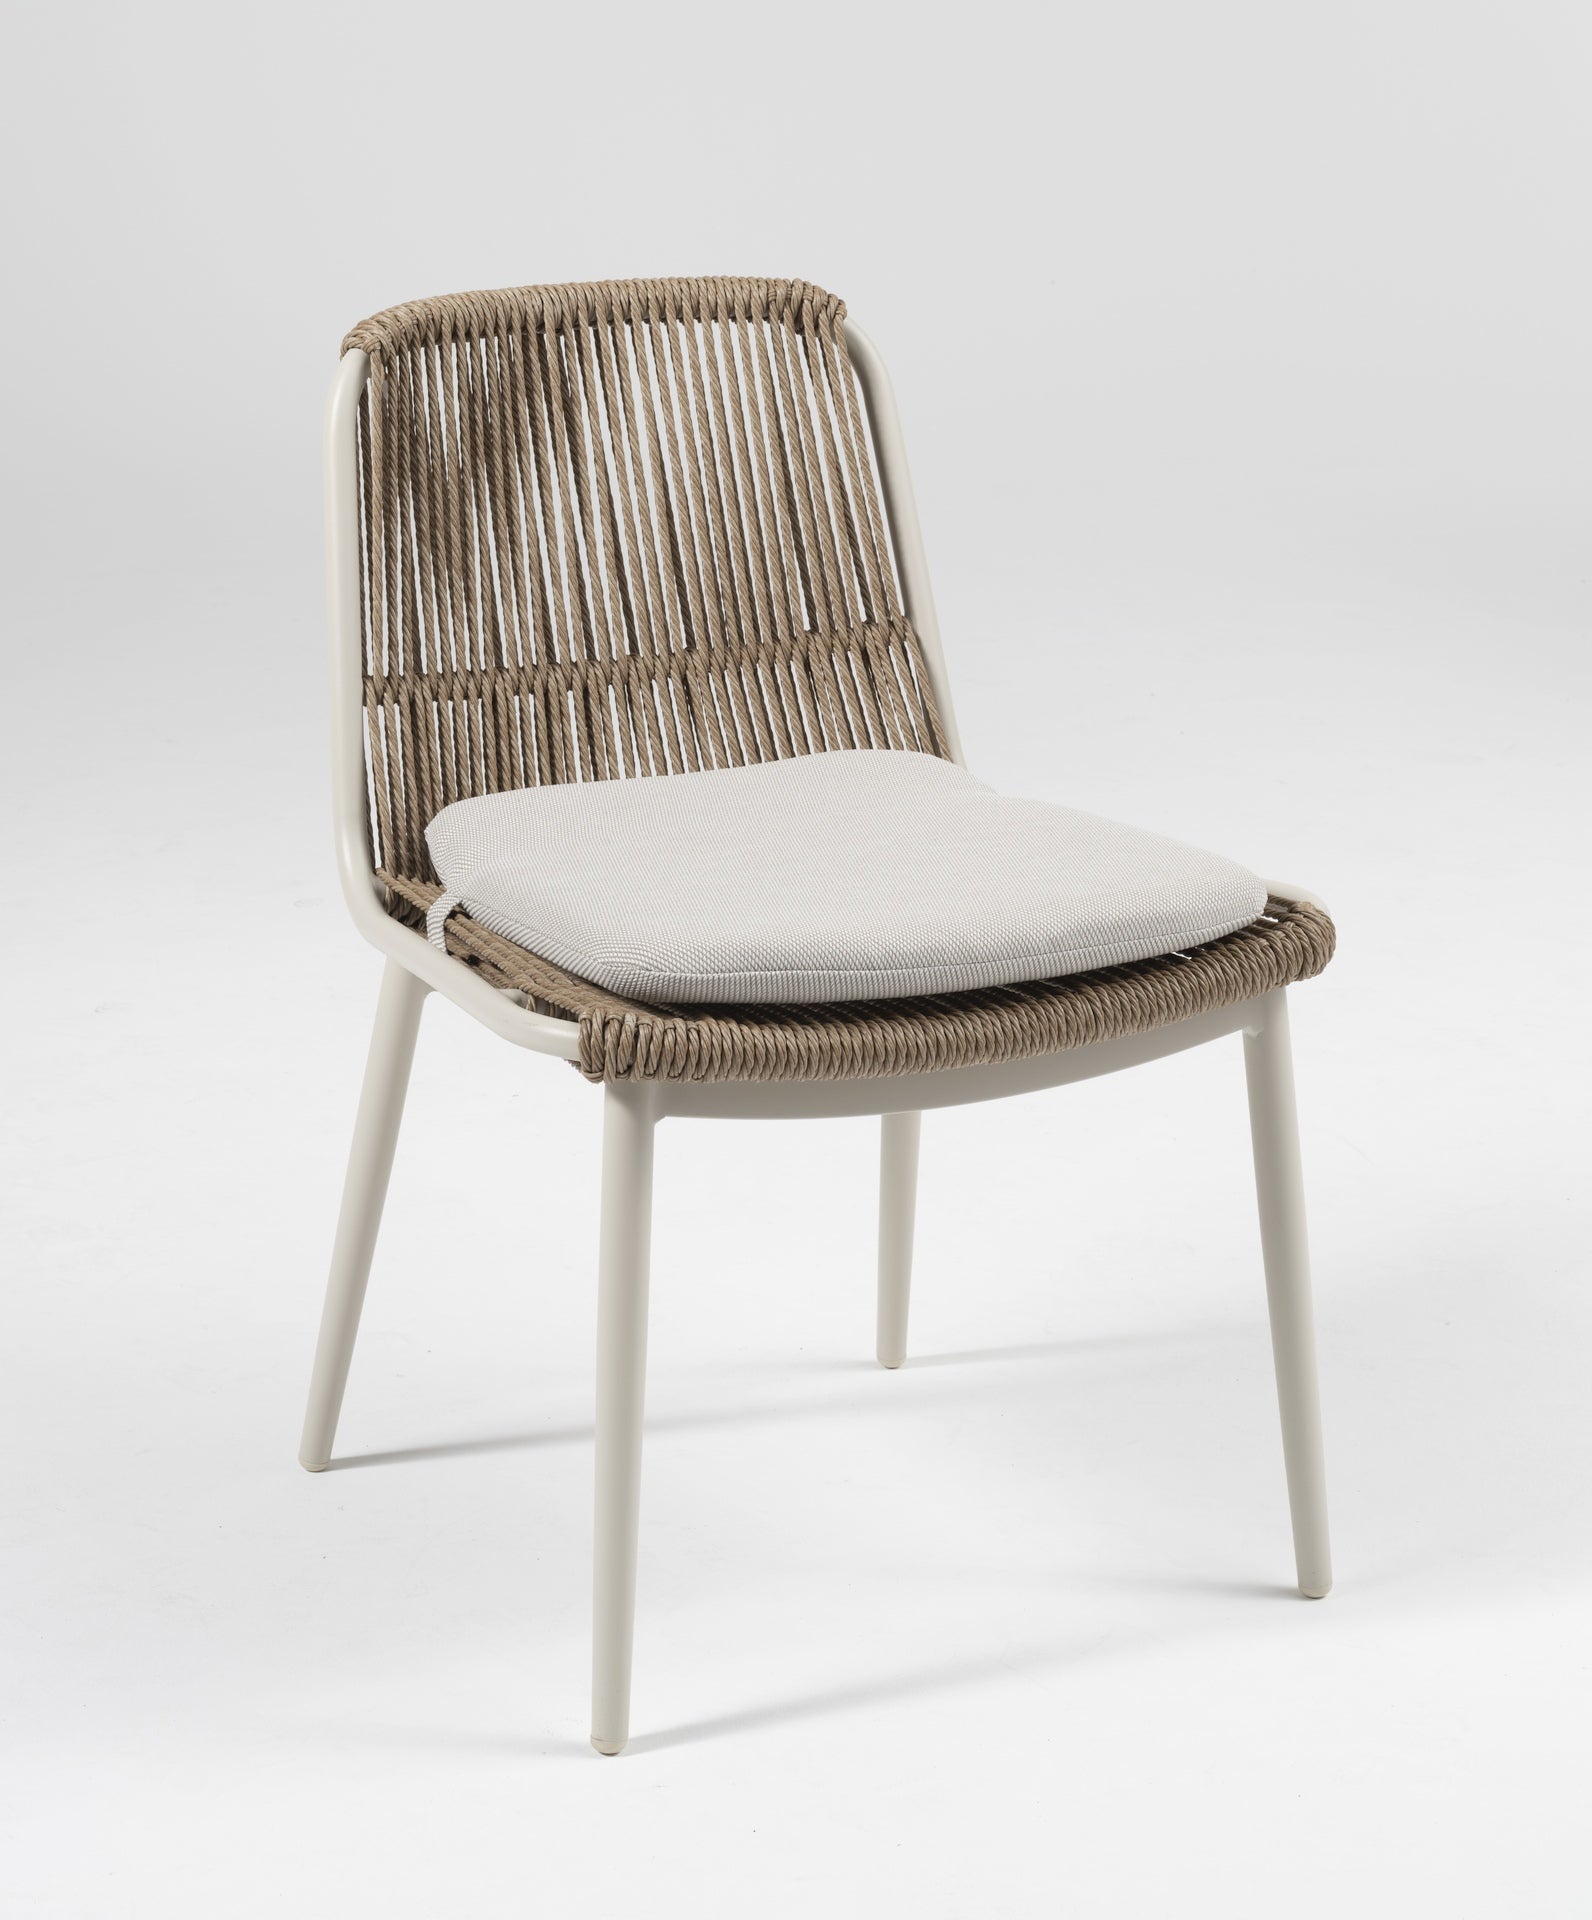 Minimalistischer 'Celeste' Gartenstuhl mit weißem Metallgestell und natürlichem, gedrehtem Kunststoffschnurgeflecht, ausgestattet mit einem bequemen Sitzkissen, erhältlich bei Gartenmoebelshop.at - Anischt mit grauem Hintergrund